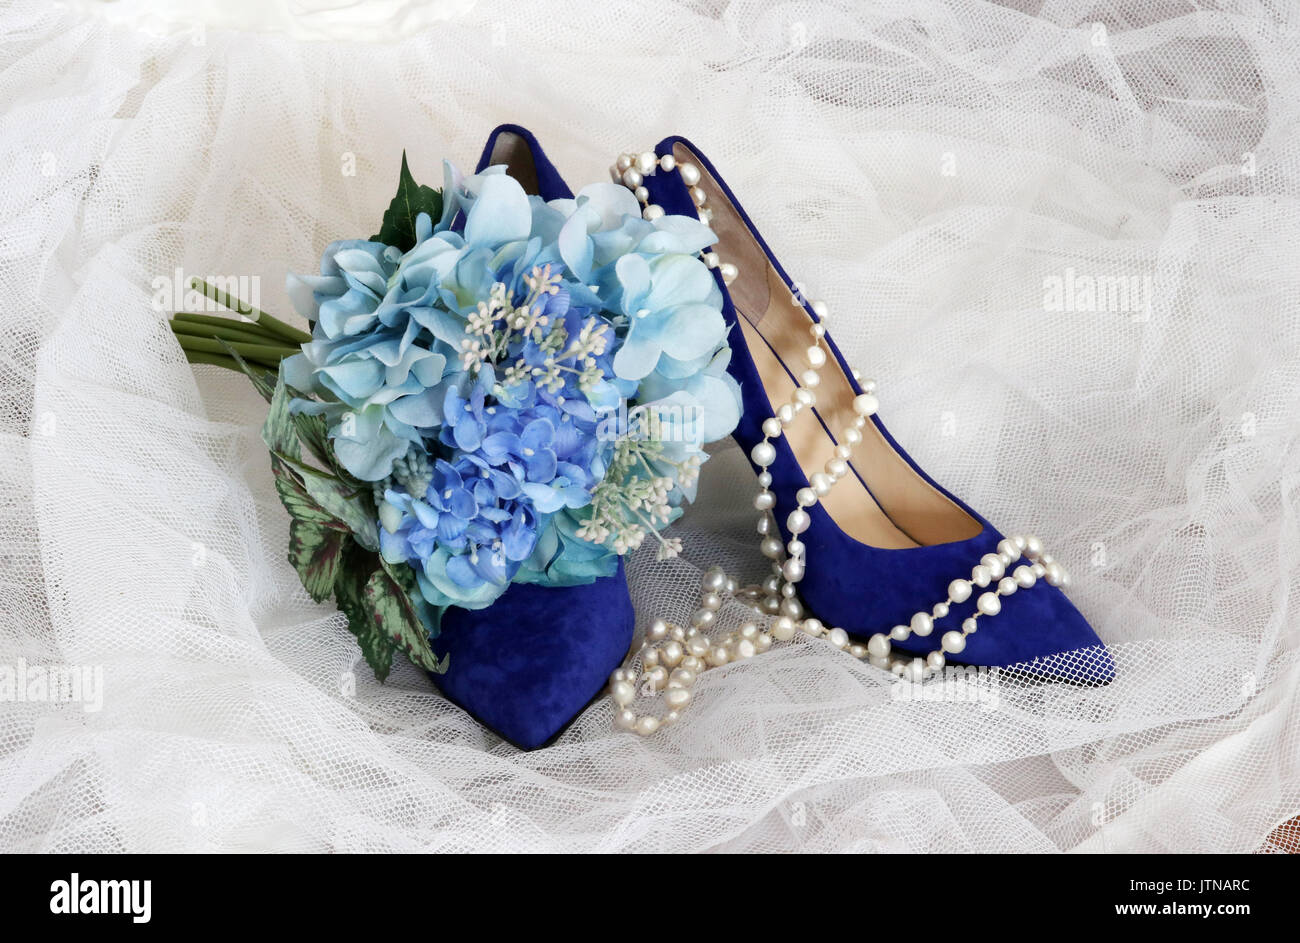 Lucido per Scarpe eleganti sposa. Bright blue suede alta collina paio di scarpe e spose bouquet con fiori blu su bianco velo nuziale. Foto Stock